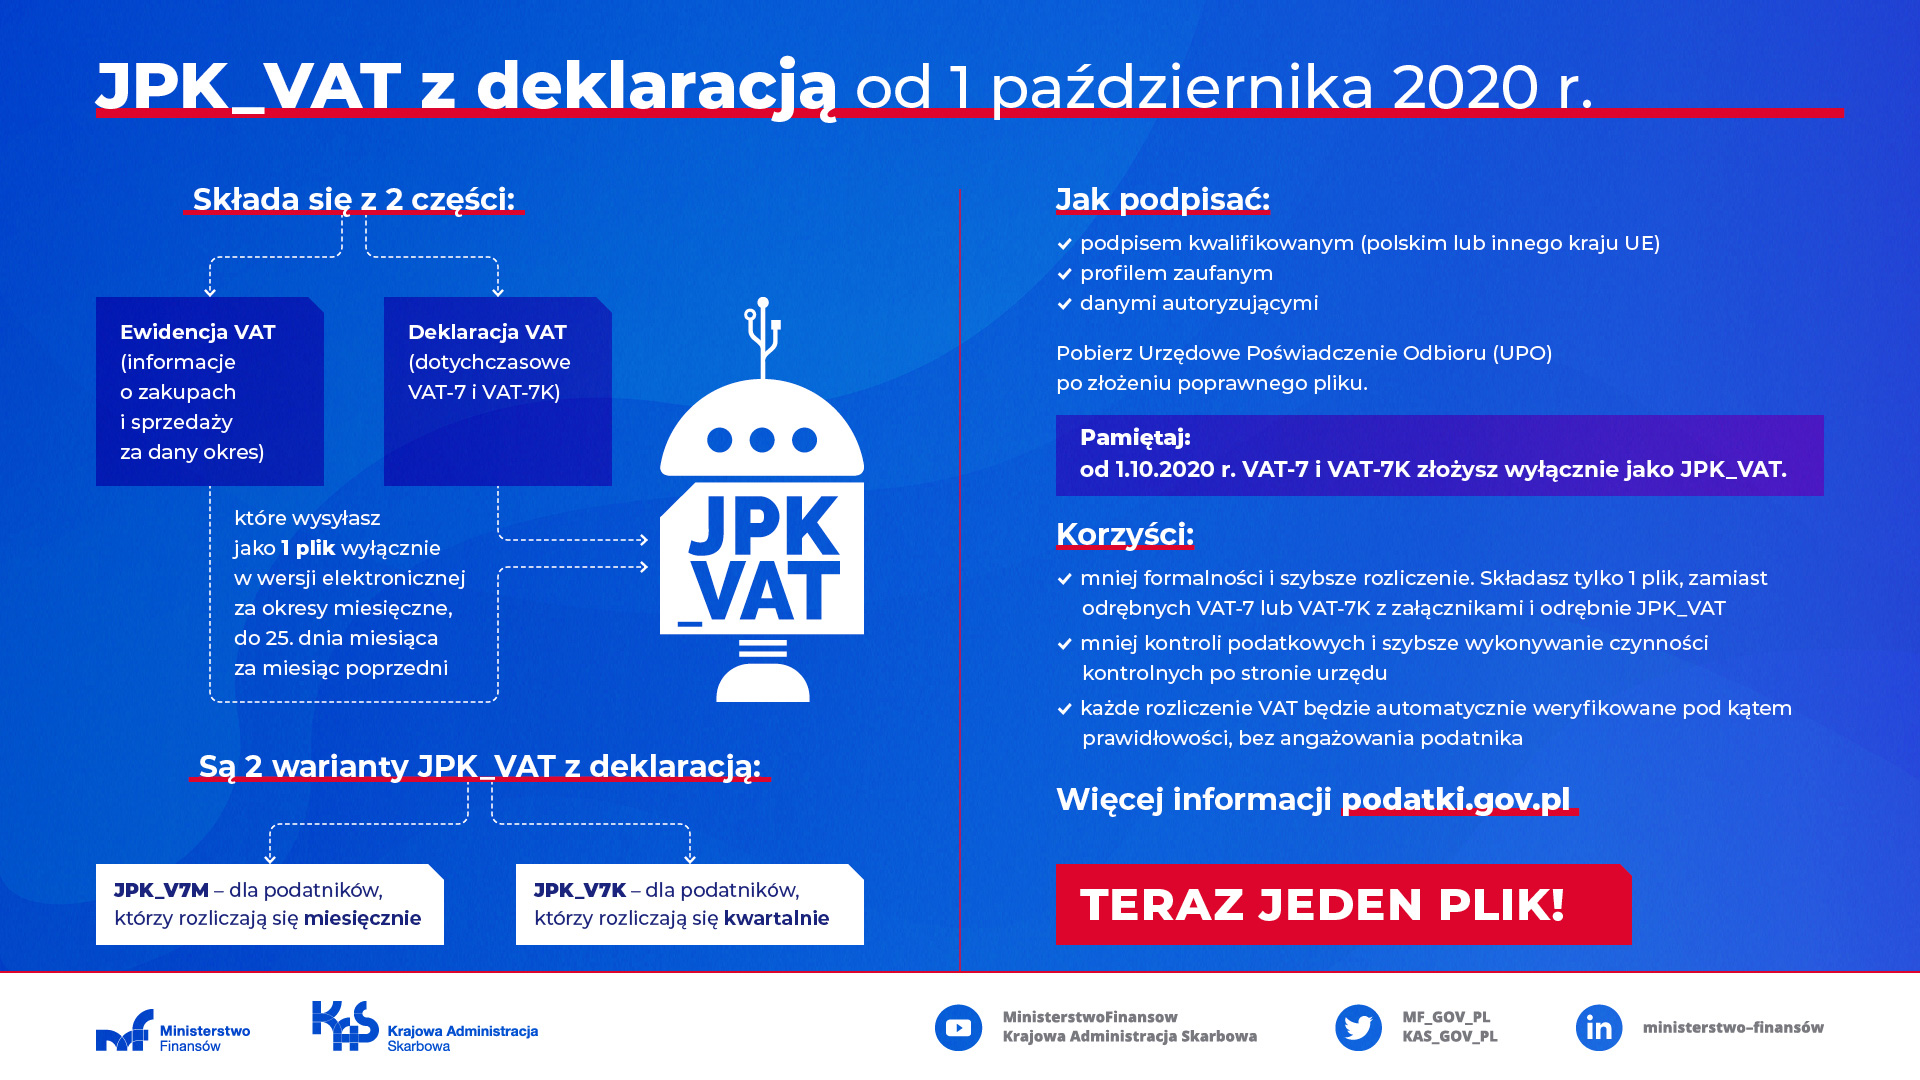 Infografika JPK_VAT z deklaracją od 1 października 2020 r.. Wersja tekstowa dostępna pod grafiką